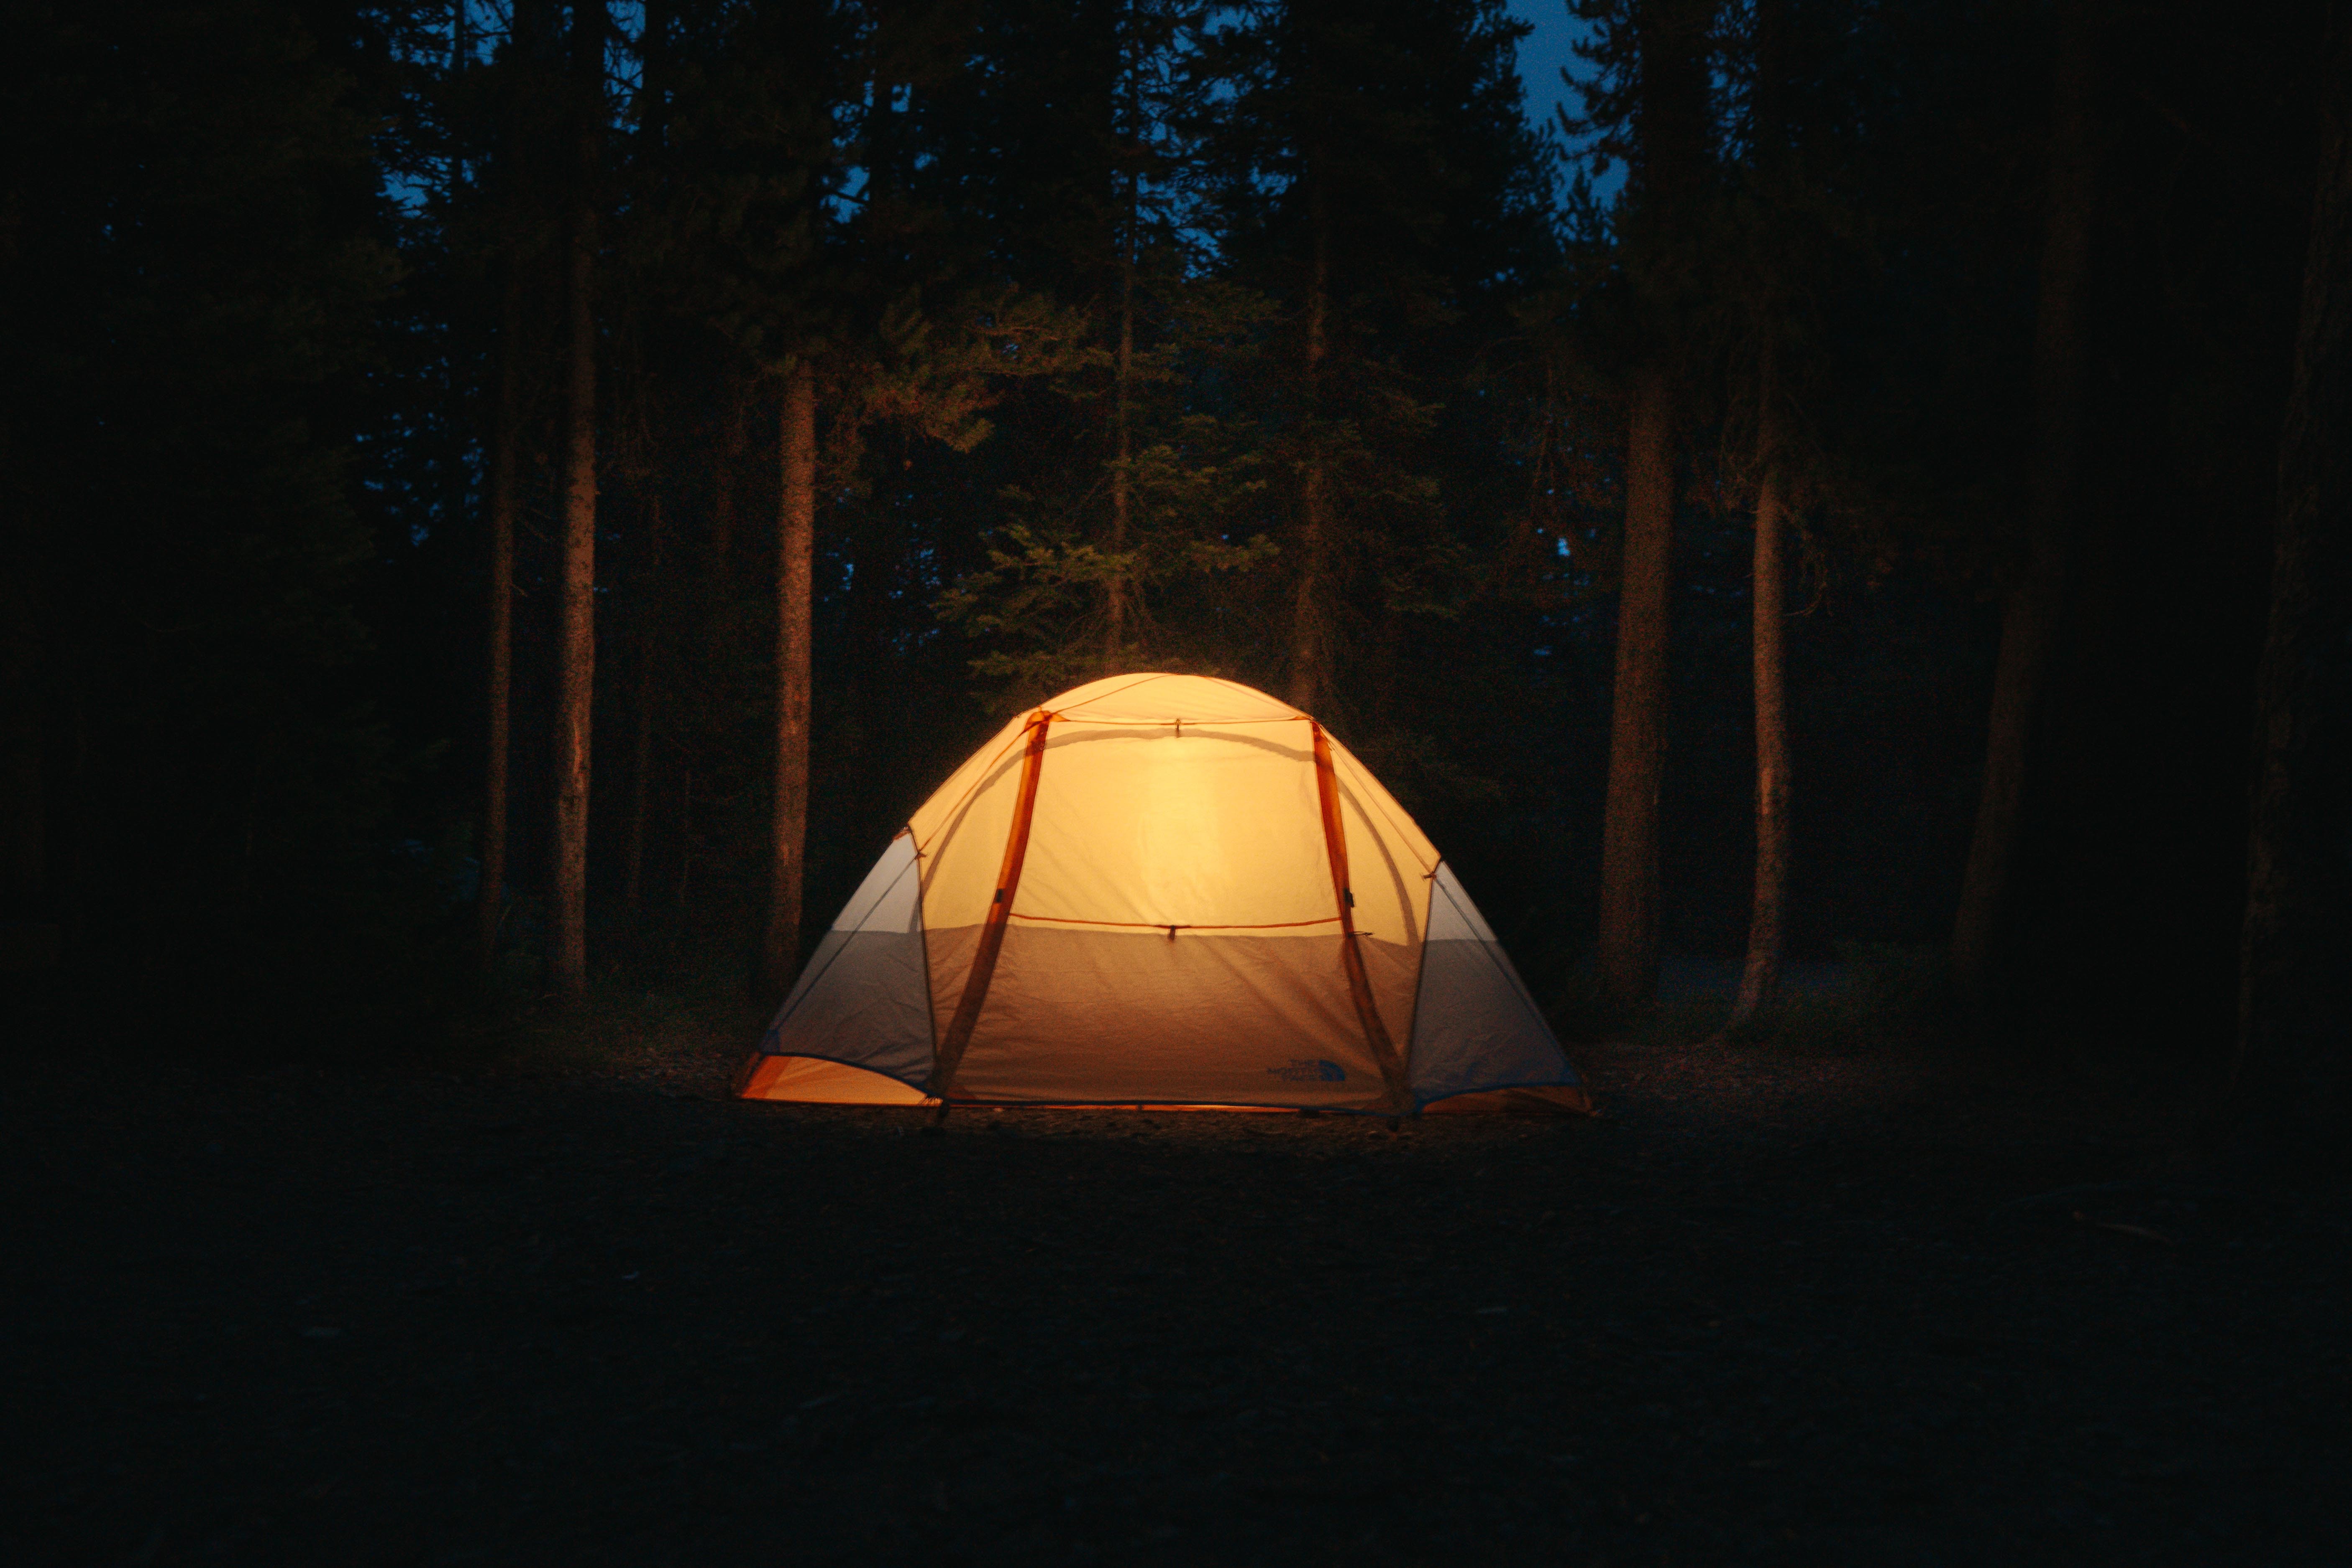 Night camp. Палатка в лесу ночью. Палатка на природе. Палатка в ночном лесу. Кемпинг с палаткой лес ночь.